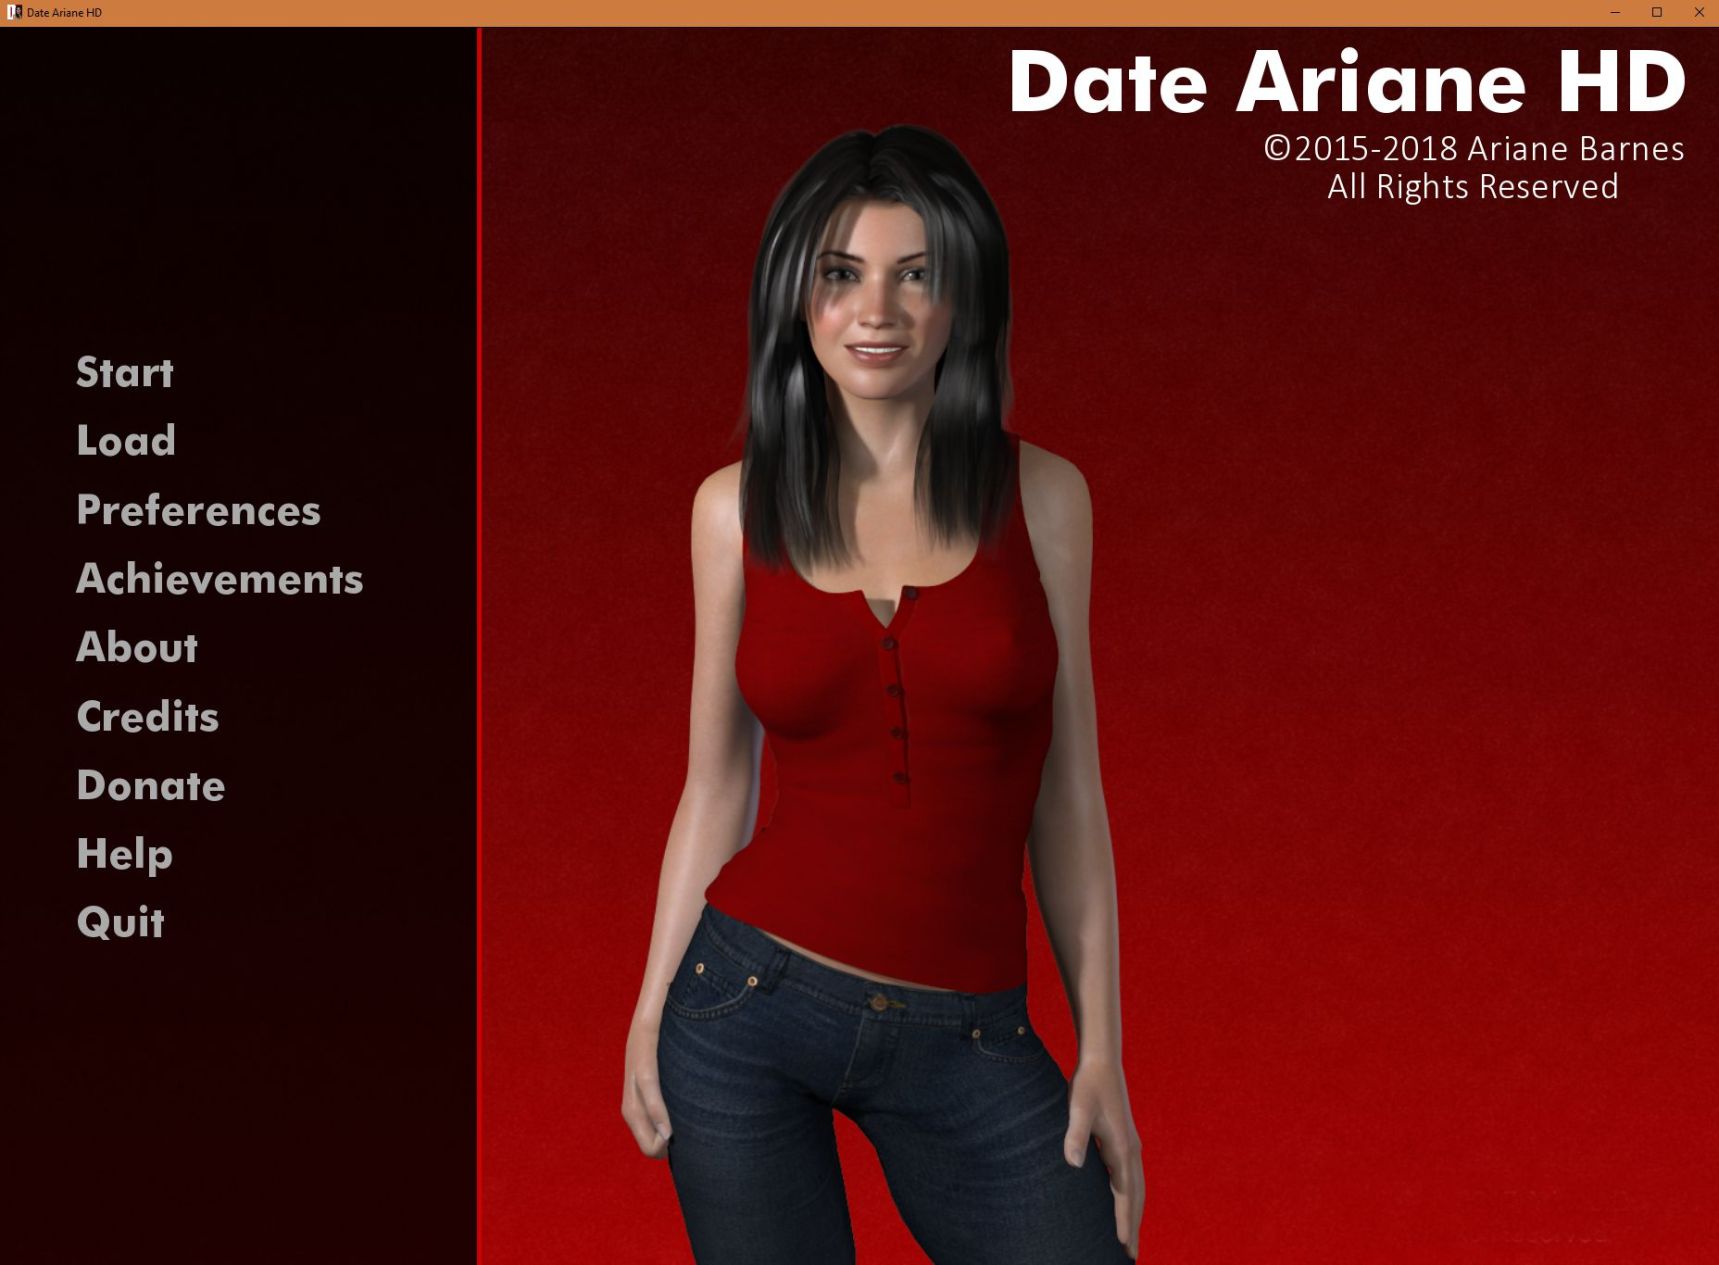 Date Ariane HD Date Ariane Games. 